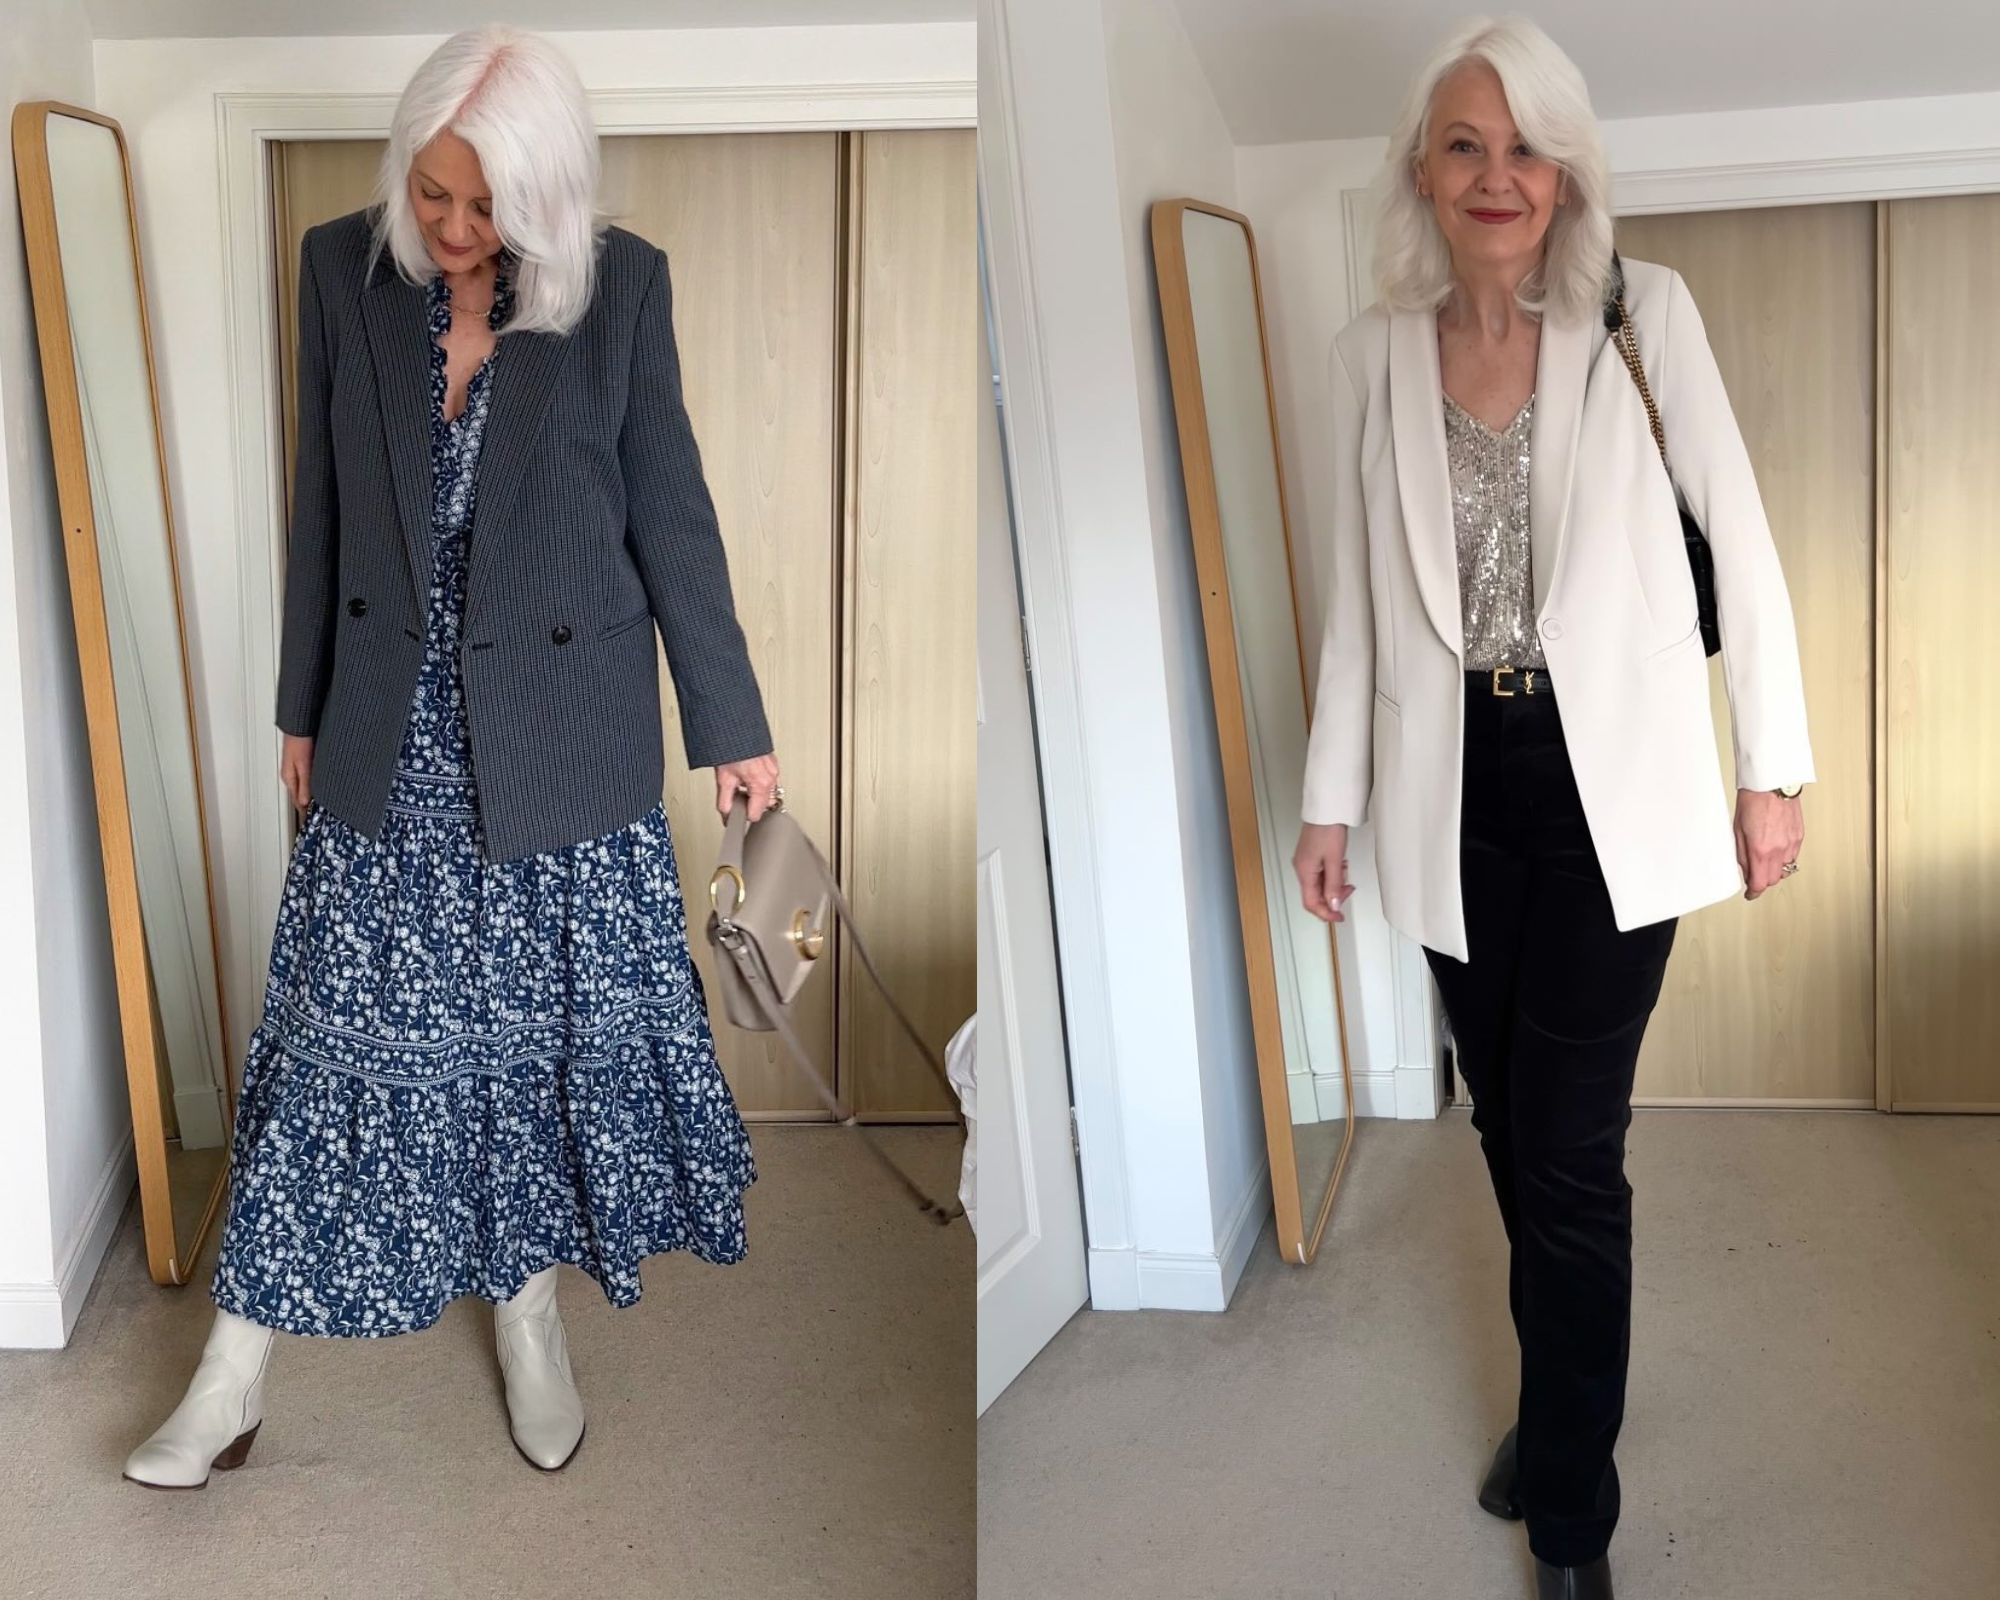 Fashion blogger 60 tuổi mặc đẹp và trẻ trung nhờ 5 món thời trang cơ bản - Ảnh 3.